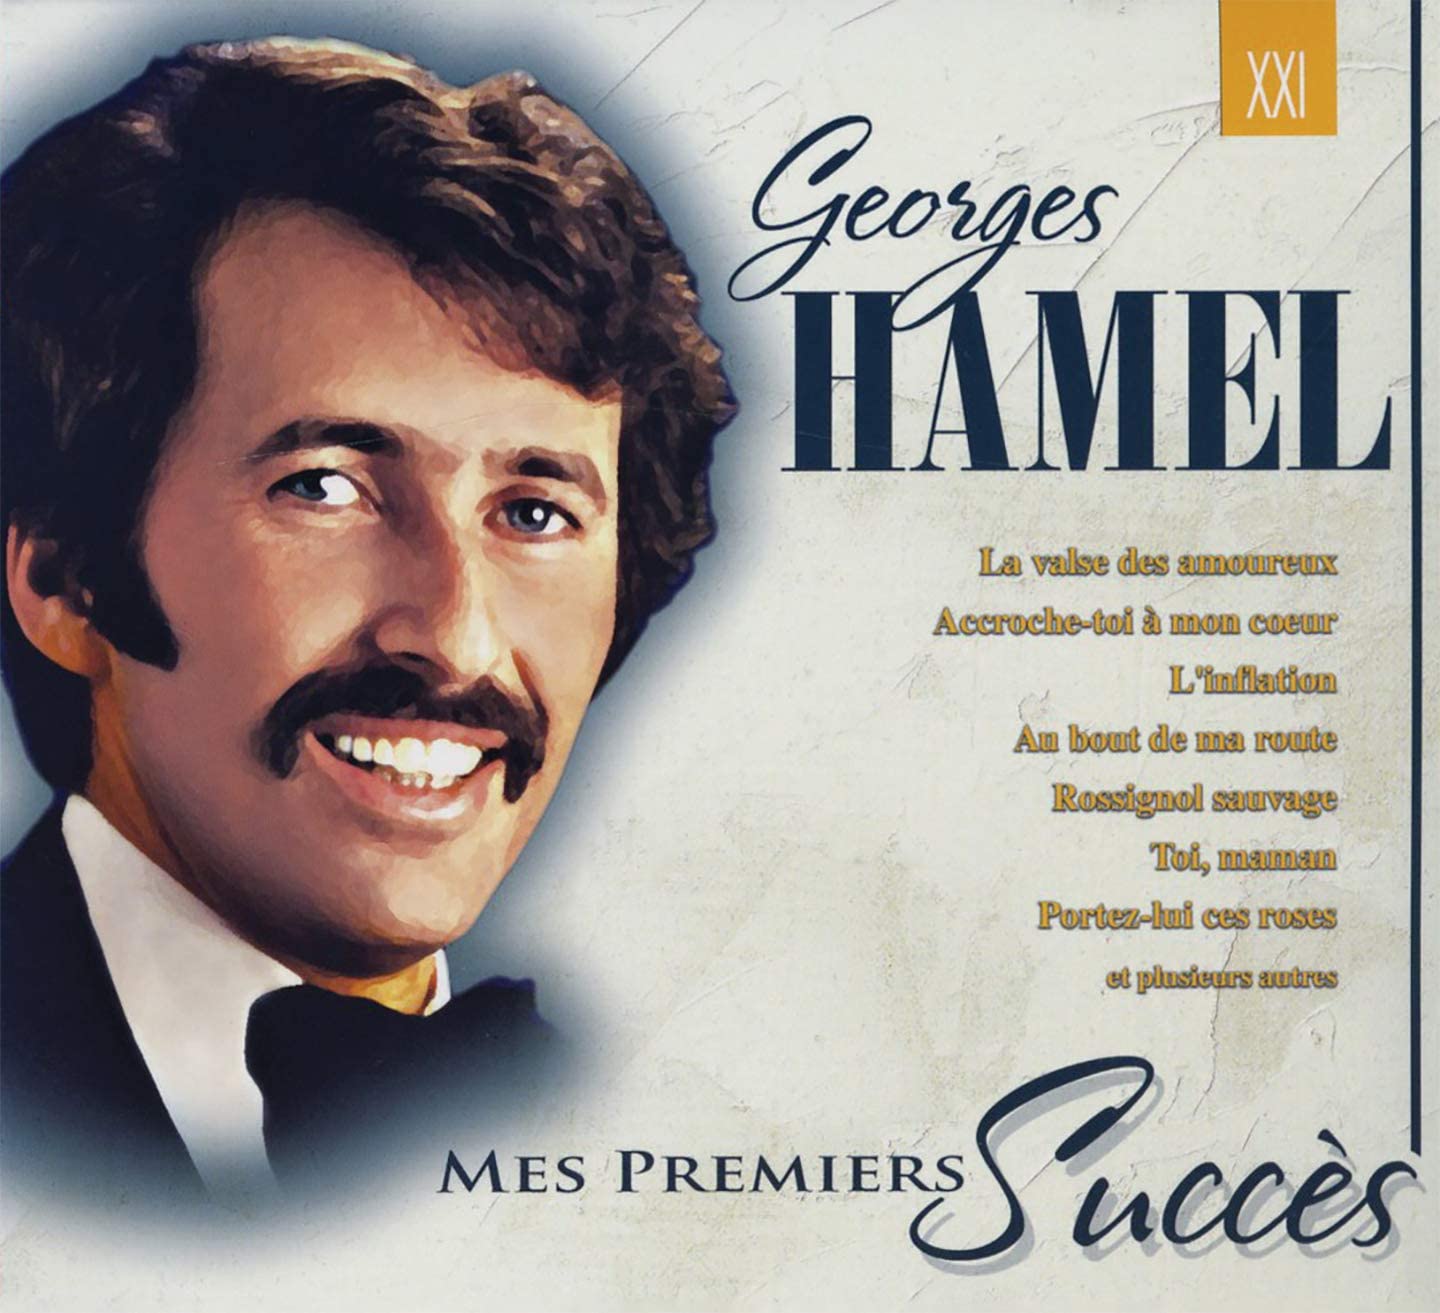 Mes Premiers Succes [Audio CD] Georges Hamel